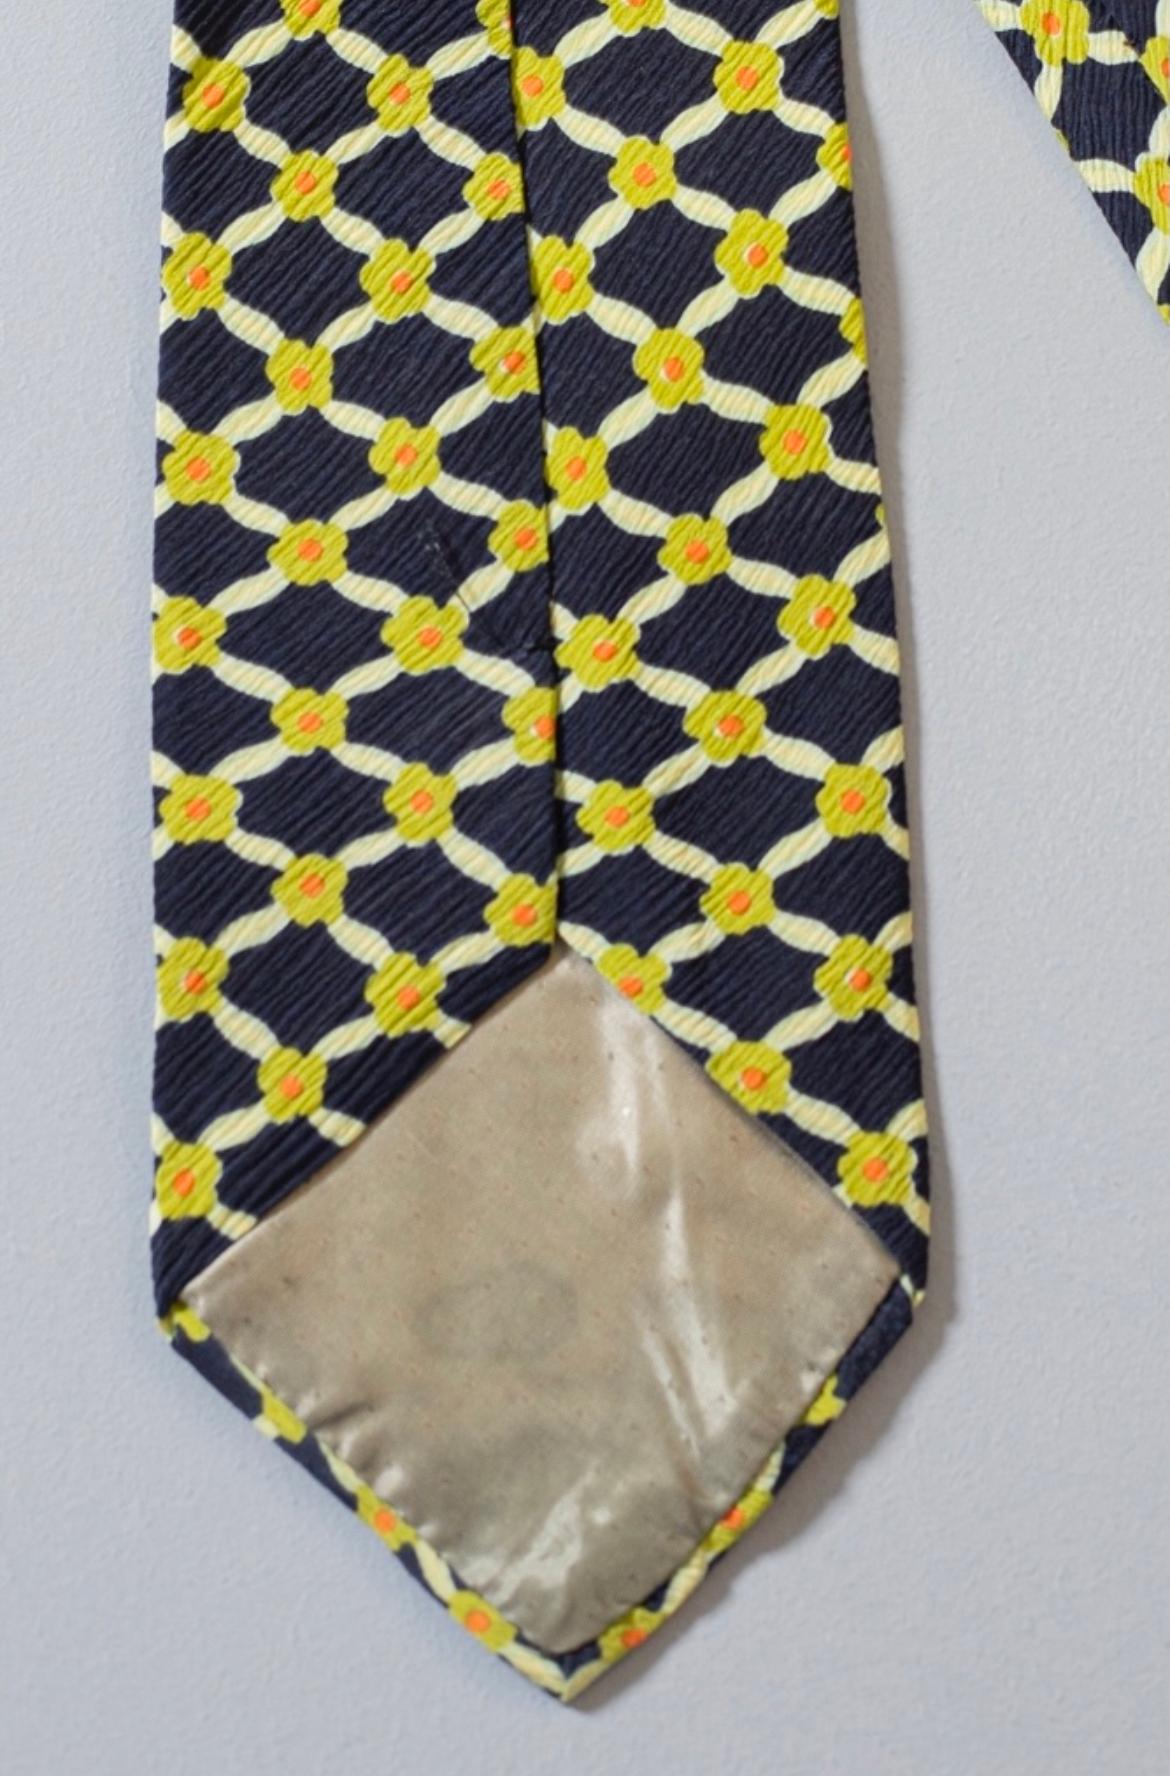 Cette cravate est d'une élégance intemporelle, conçue par Pascal, elle est réalisée en 100% soie. Décoré de petites fleurs jaunes sur un fond bleu, les fleurs sont jointes pour former de petits losanges. 
Idéal pour une belle soirée romantique aux